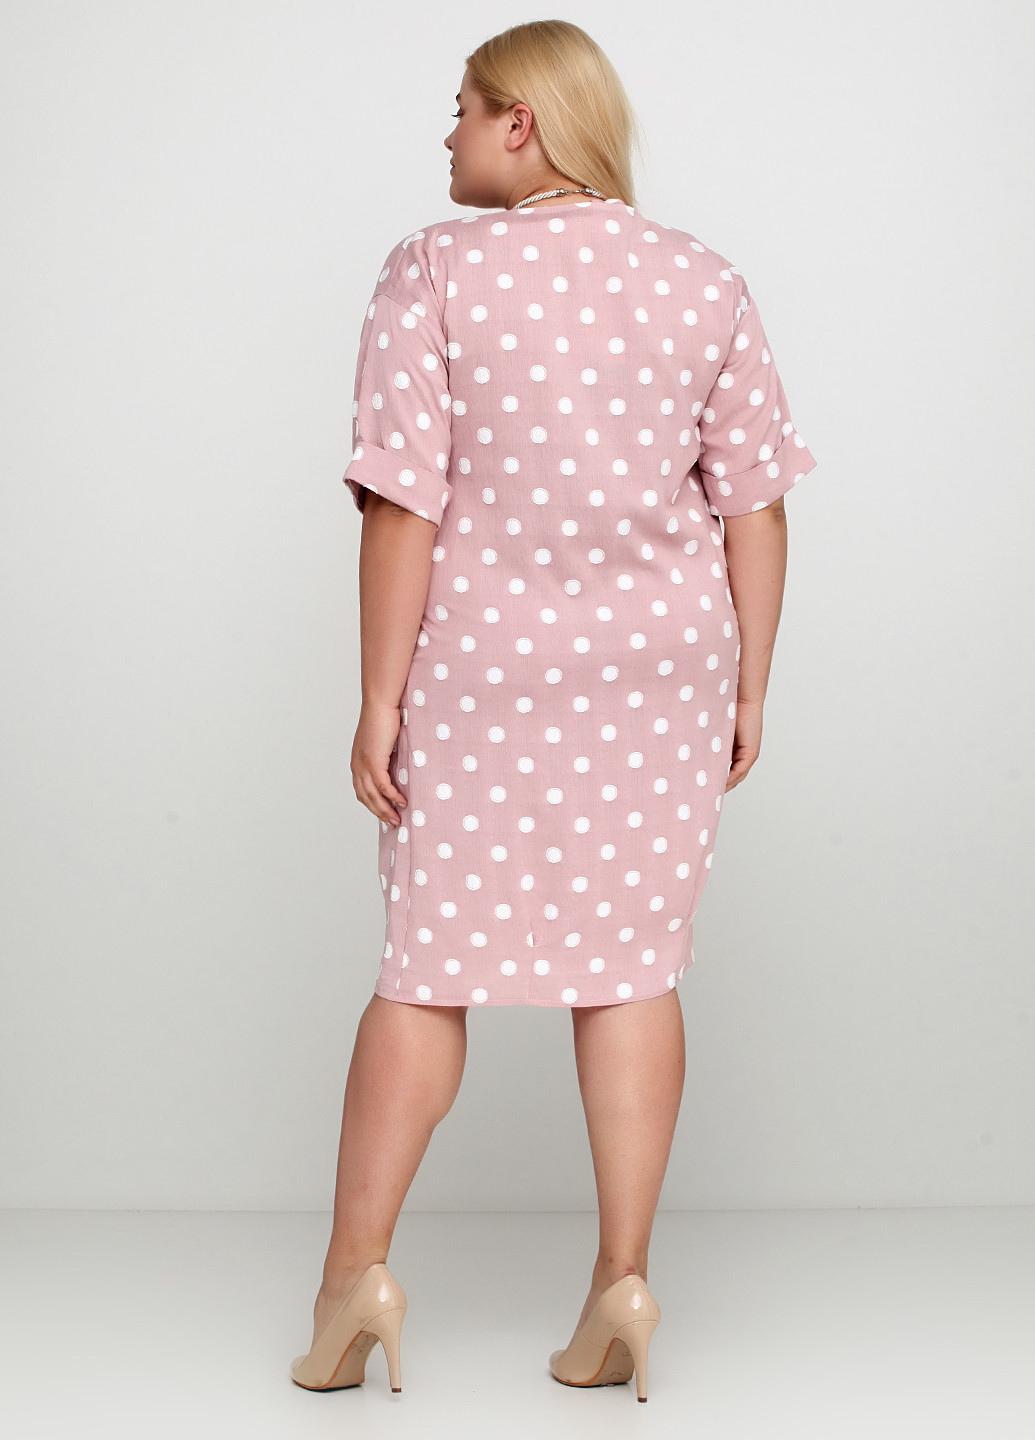 Бледно-розовое деловое комплект (платье, подвеска) I Love Comfort в горошек